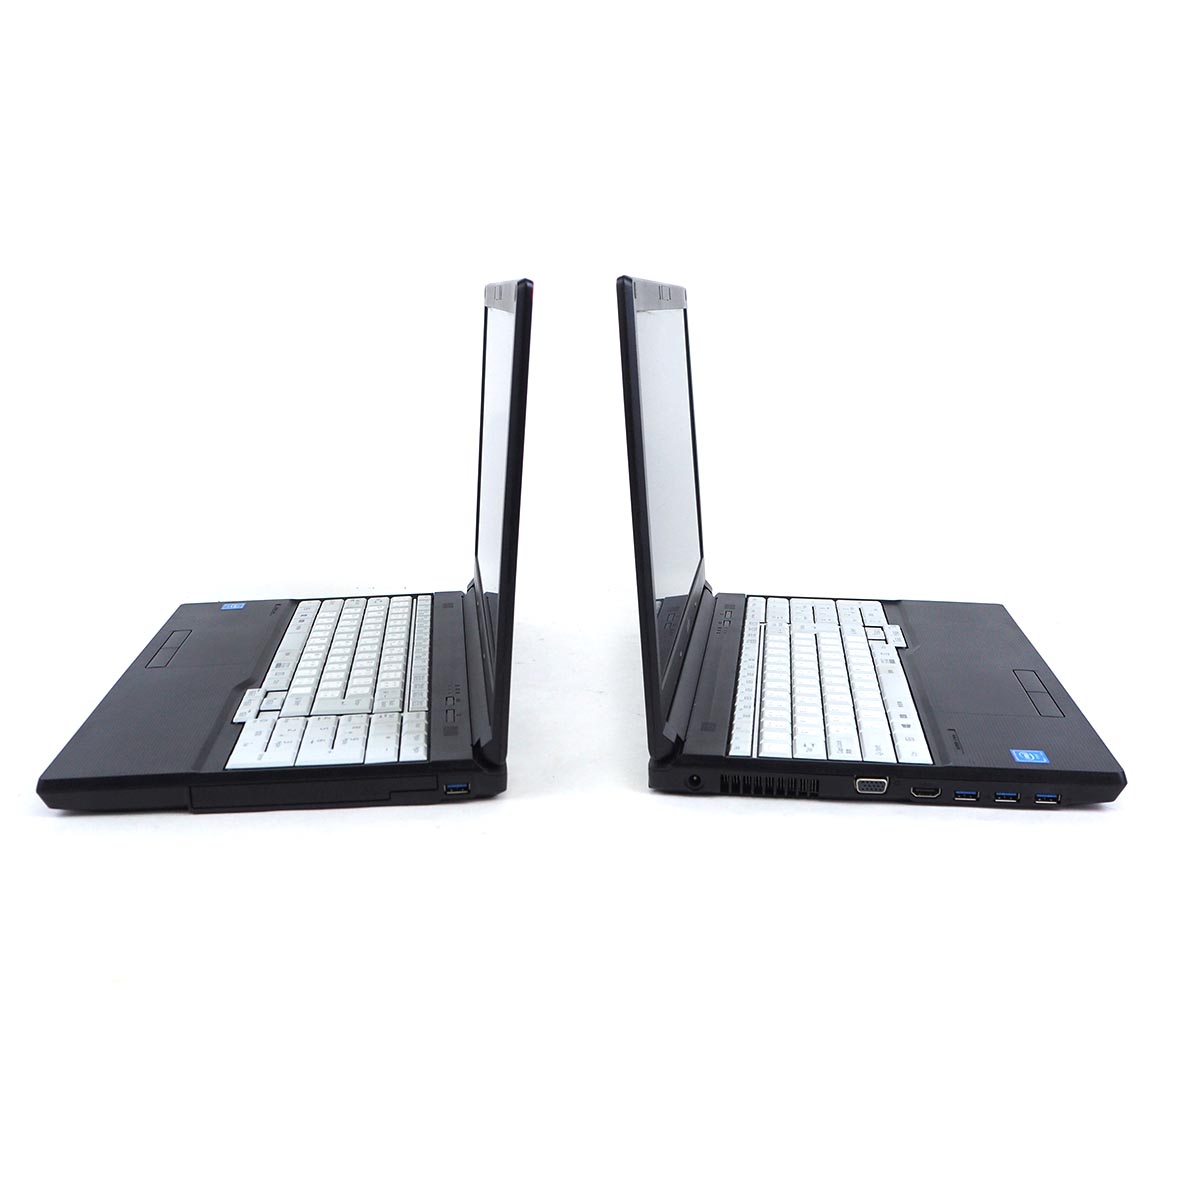 รายละเอียดเพิ่มเติมเกี่ยวกับ โน๊ตบุ๊ค Fu LifeBook A577/R Celeron Gen7 / RAM 4-8GB (DDR4) HDD/SSD หน้าจอ 15.6 นิ้ว คีย์แยก Wifi-Blth ในตัว Refhed laptop used notebook คอมพิวเตอร์ 2022 มีประกัน By Totalsol